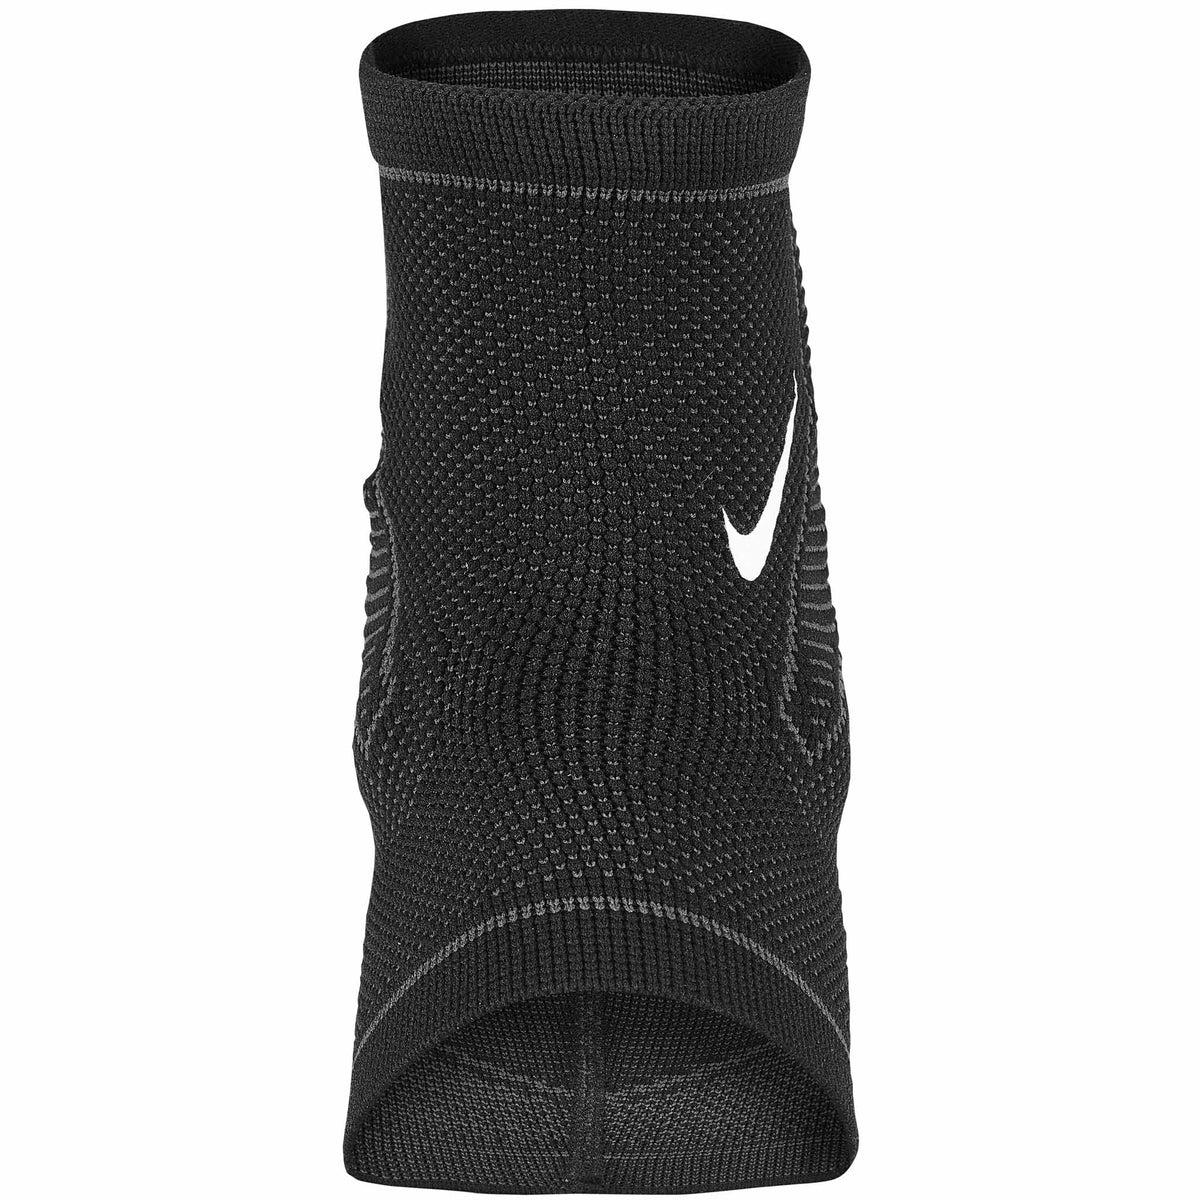 Nike Pro Knit Ankle Sleeve chevillère sport - angle